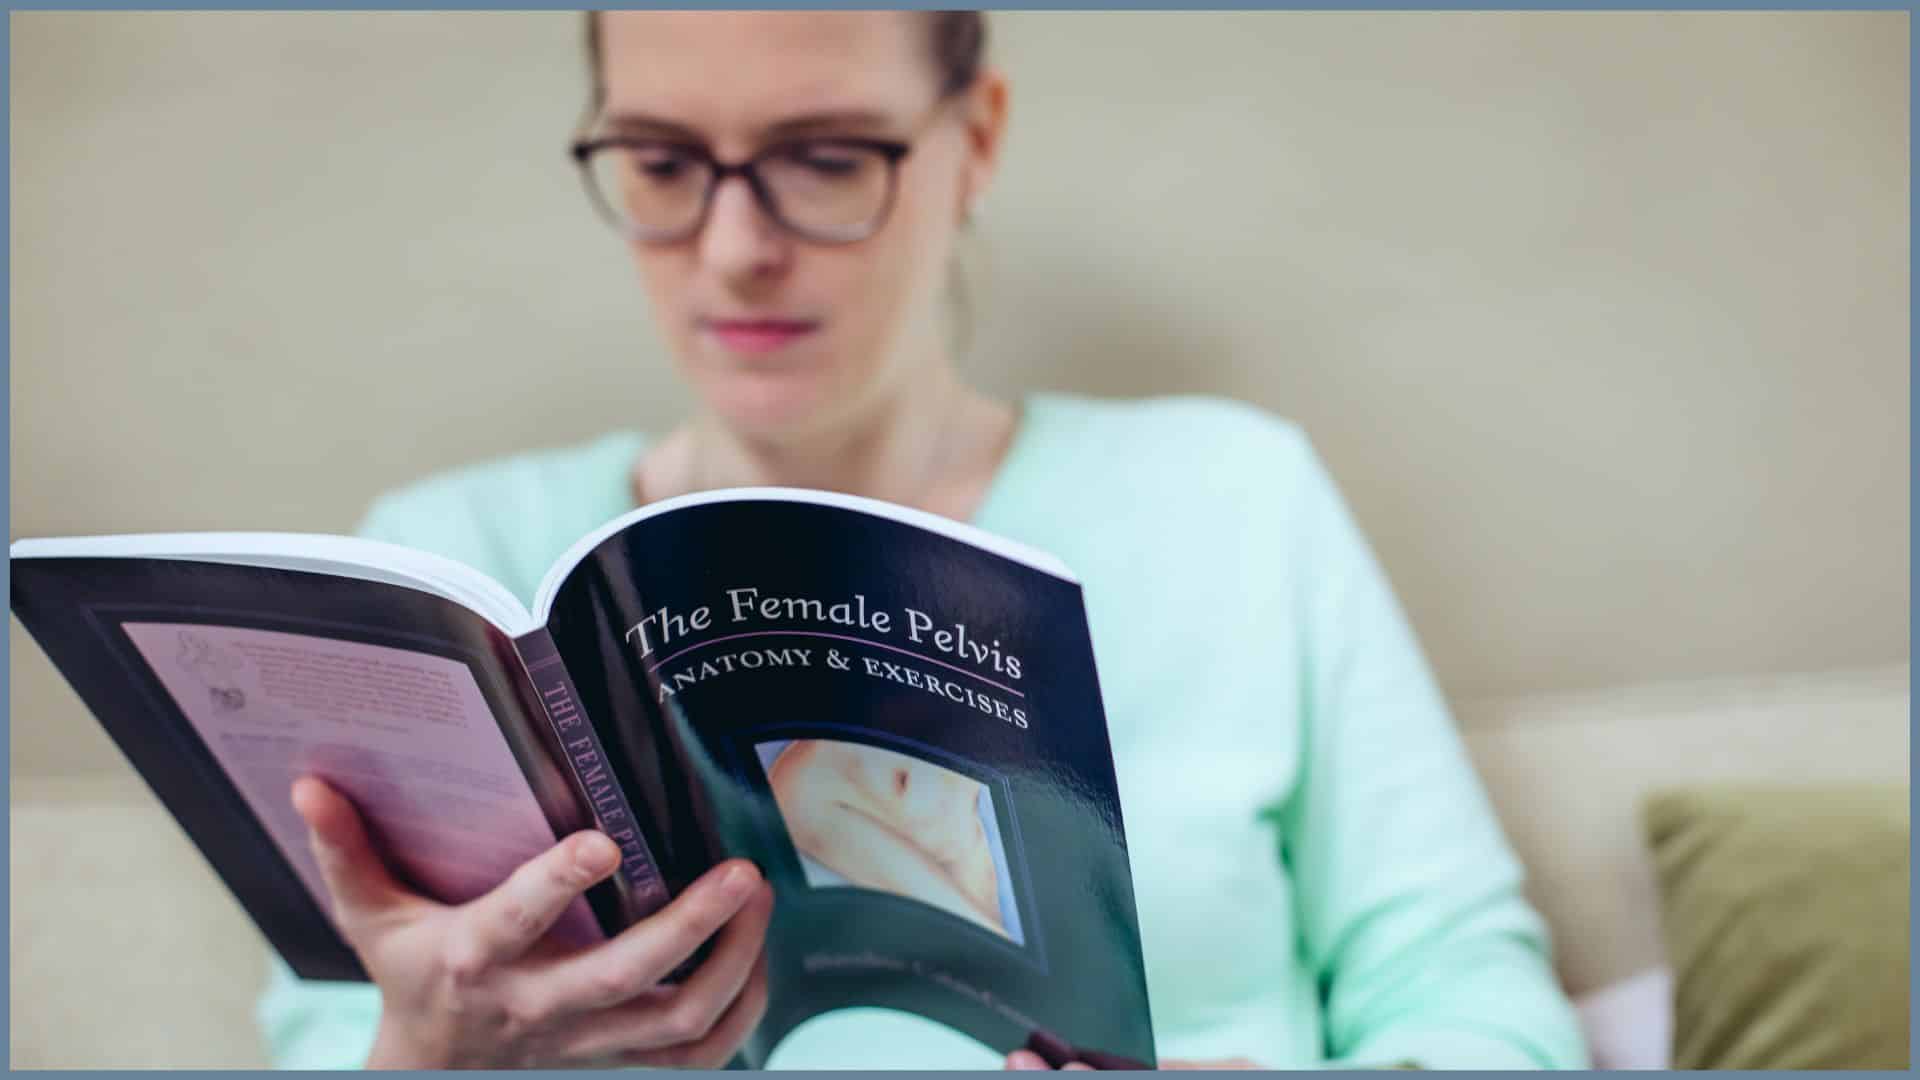 Eine Frau liest ein Buch mit dem Titel "The female pelvis - Anatomy and Exercises". Das Buch im Vordergrund ist scharf, die Frau im Hintergrund unscharf, aber erkennbar.